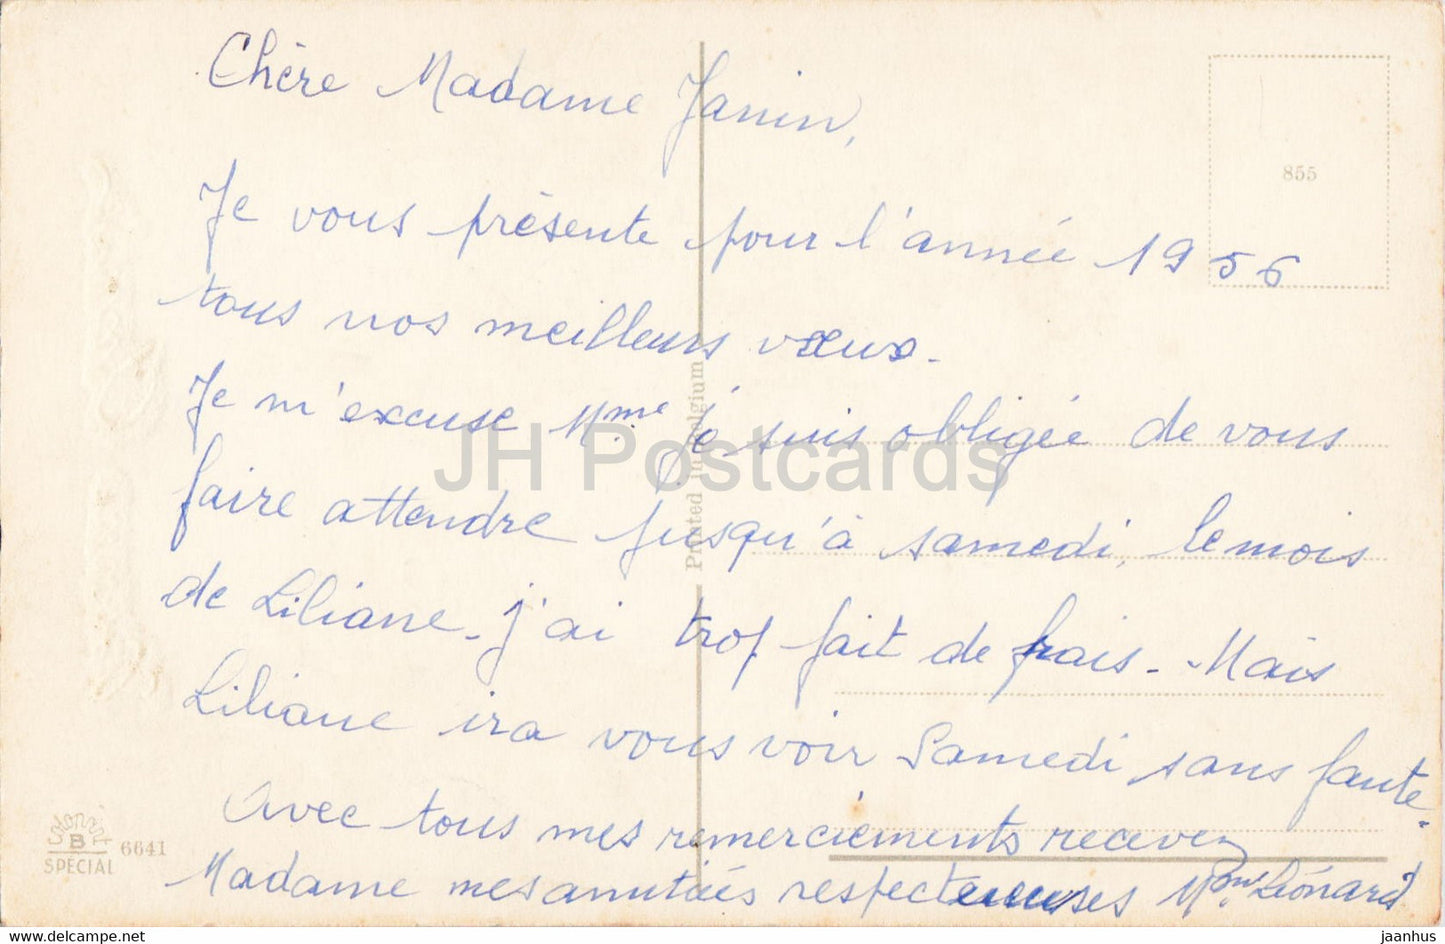 Carte de voeux anniversaire - Bonne Annee - fleurs - 6641 - illustration - carte postale ancienne - 1956 - France - occasion